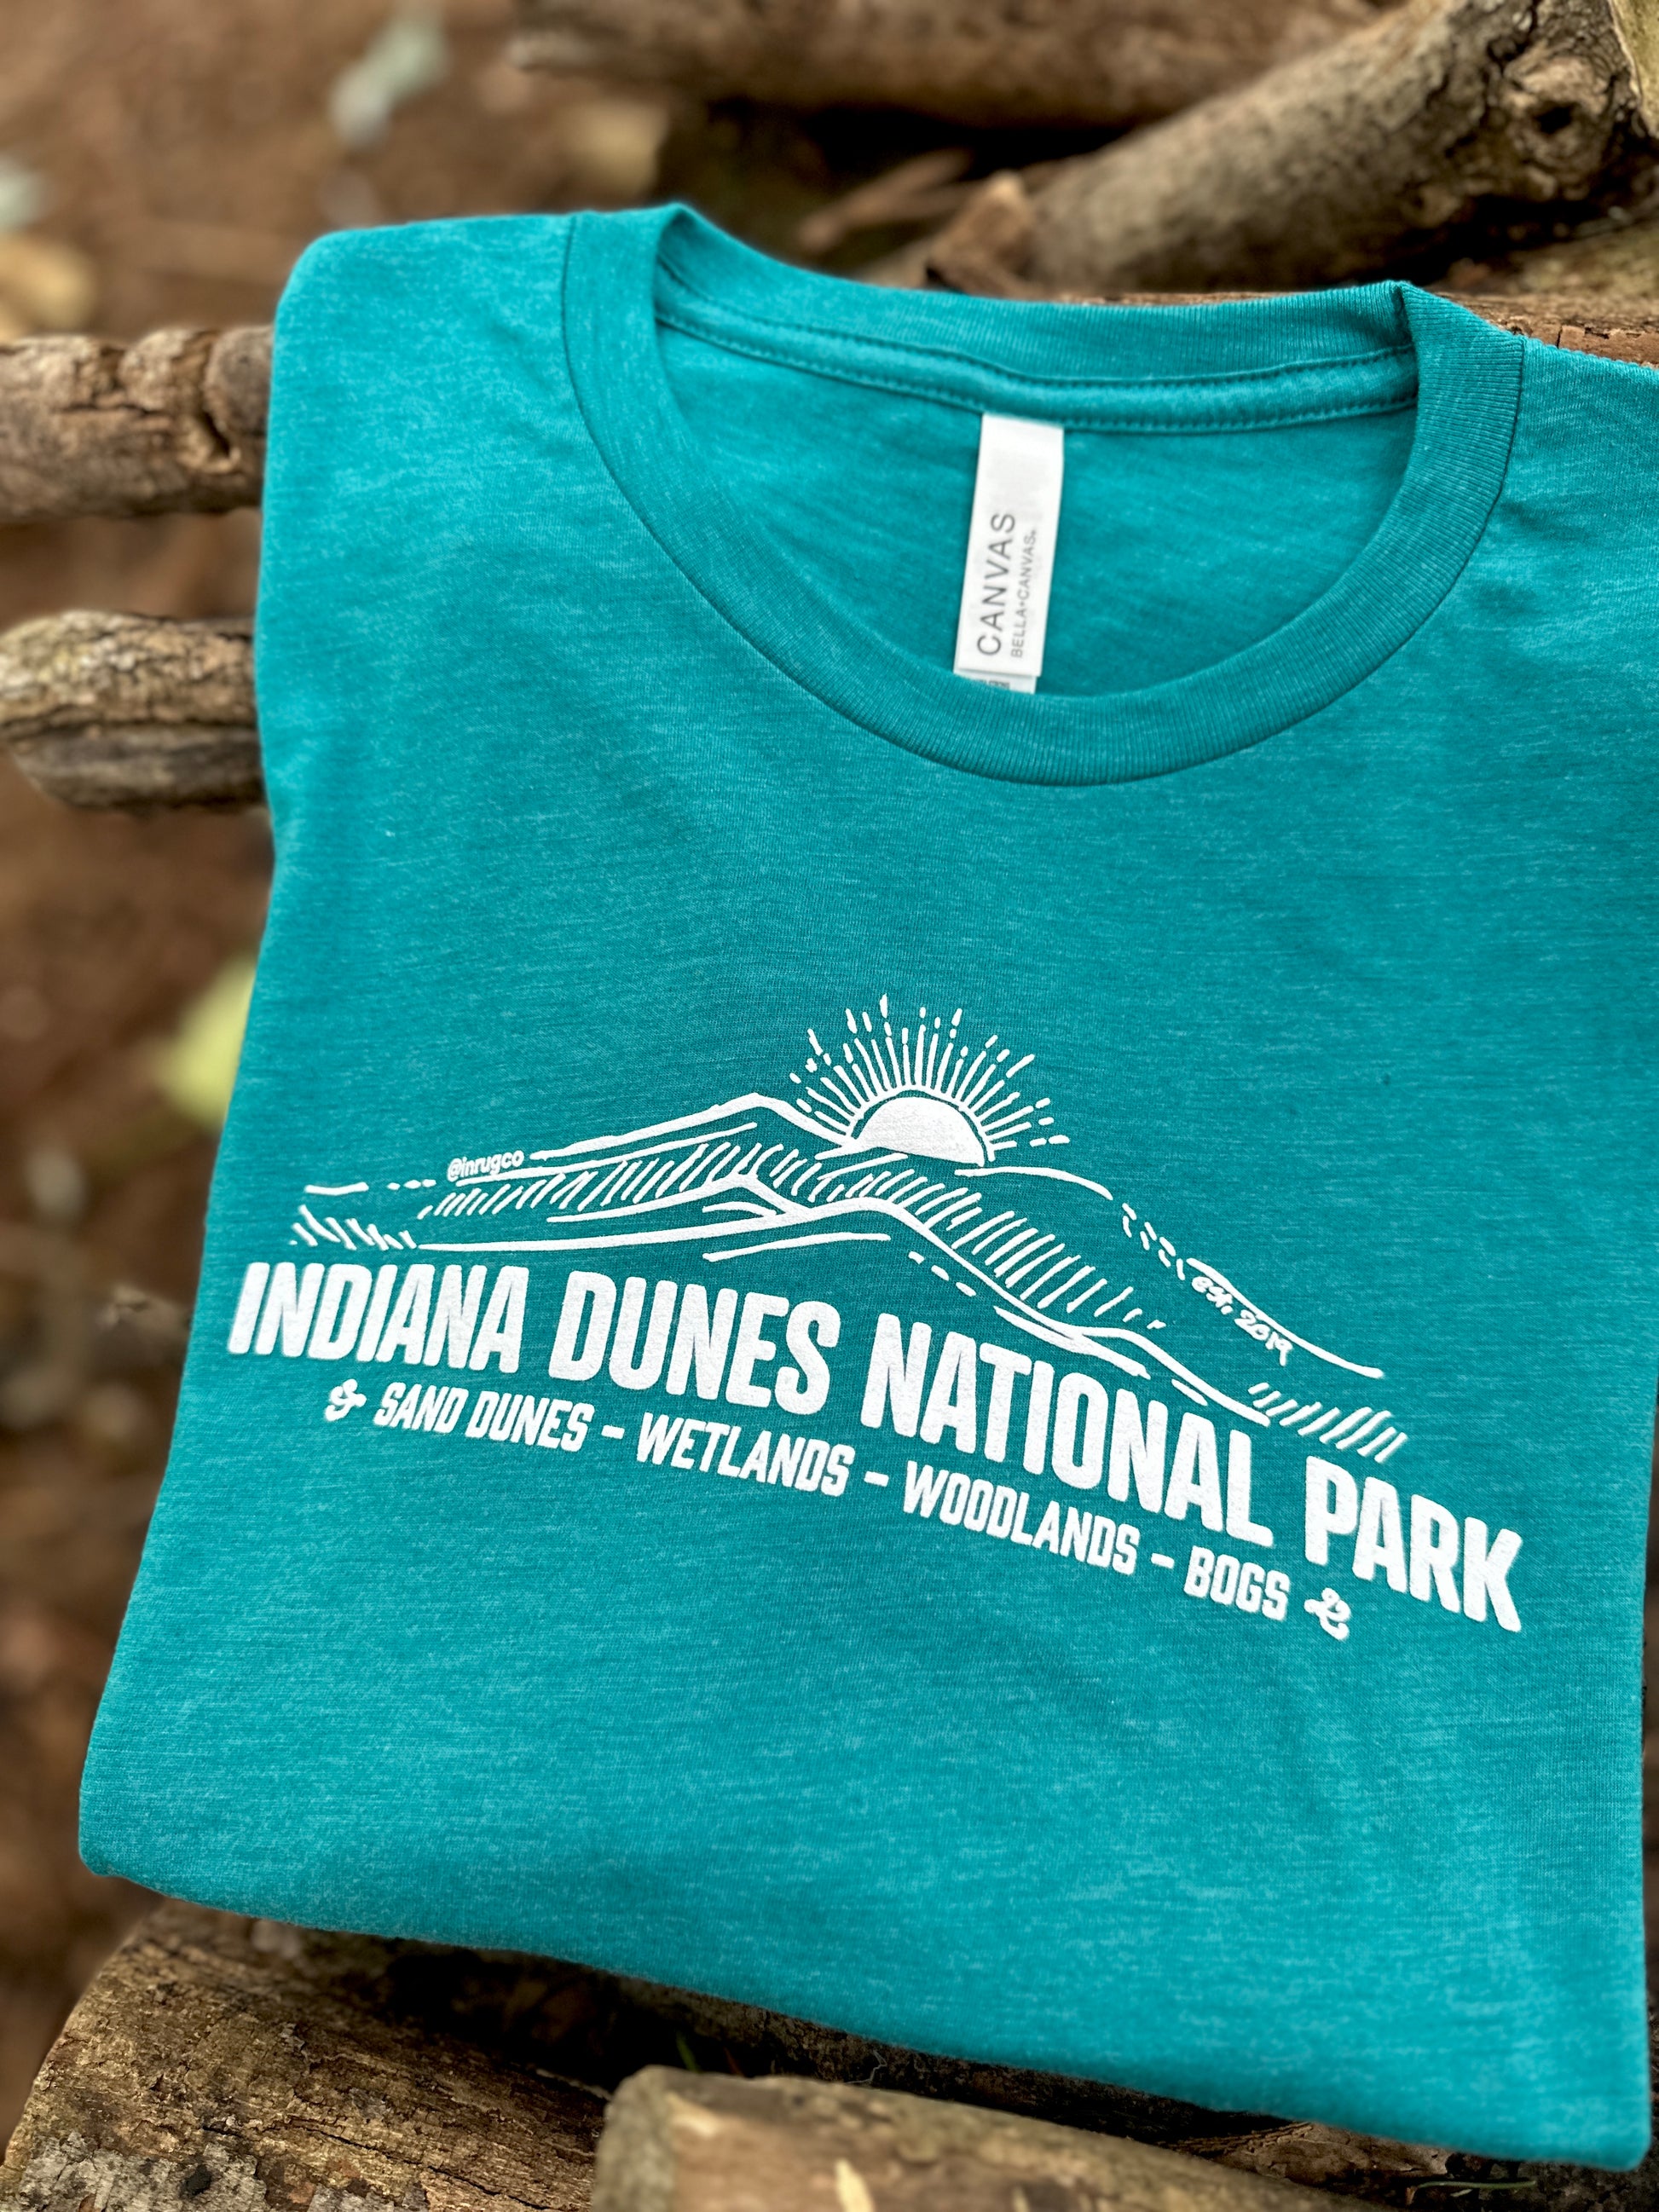 indiana dunes national park shirt